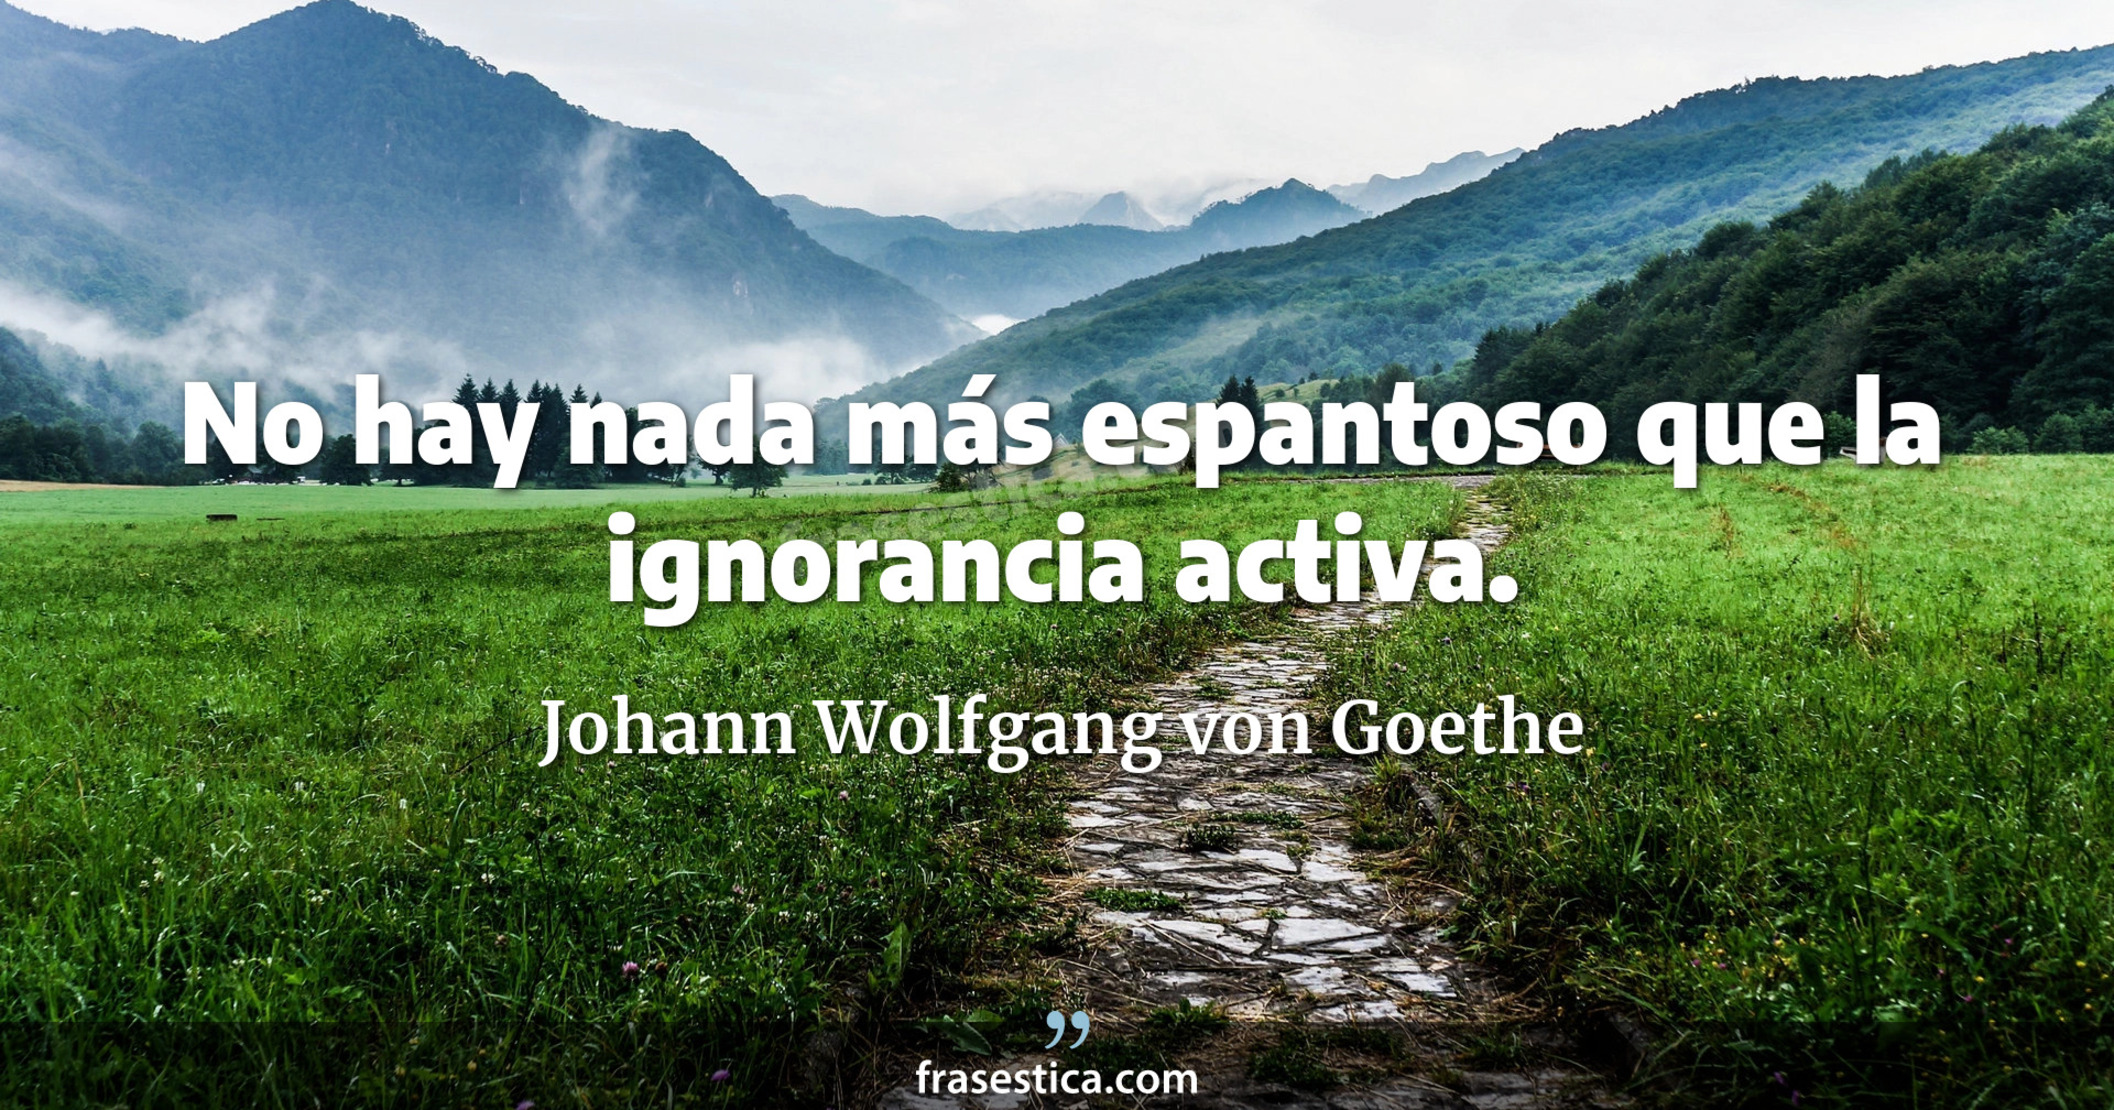 No hay nada más espantoso que la ignorancia activa. - Johann Wolfgang von Goethe